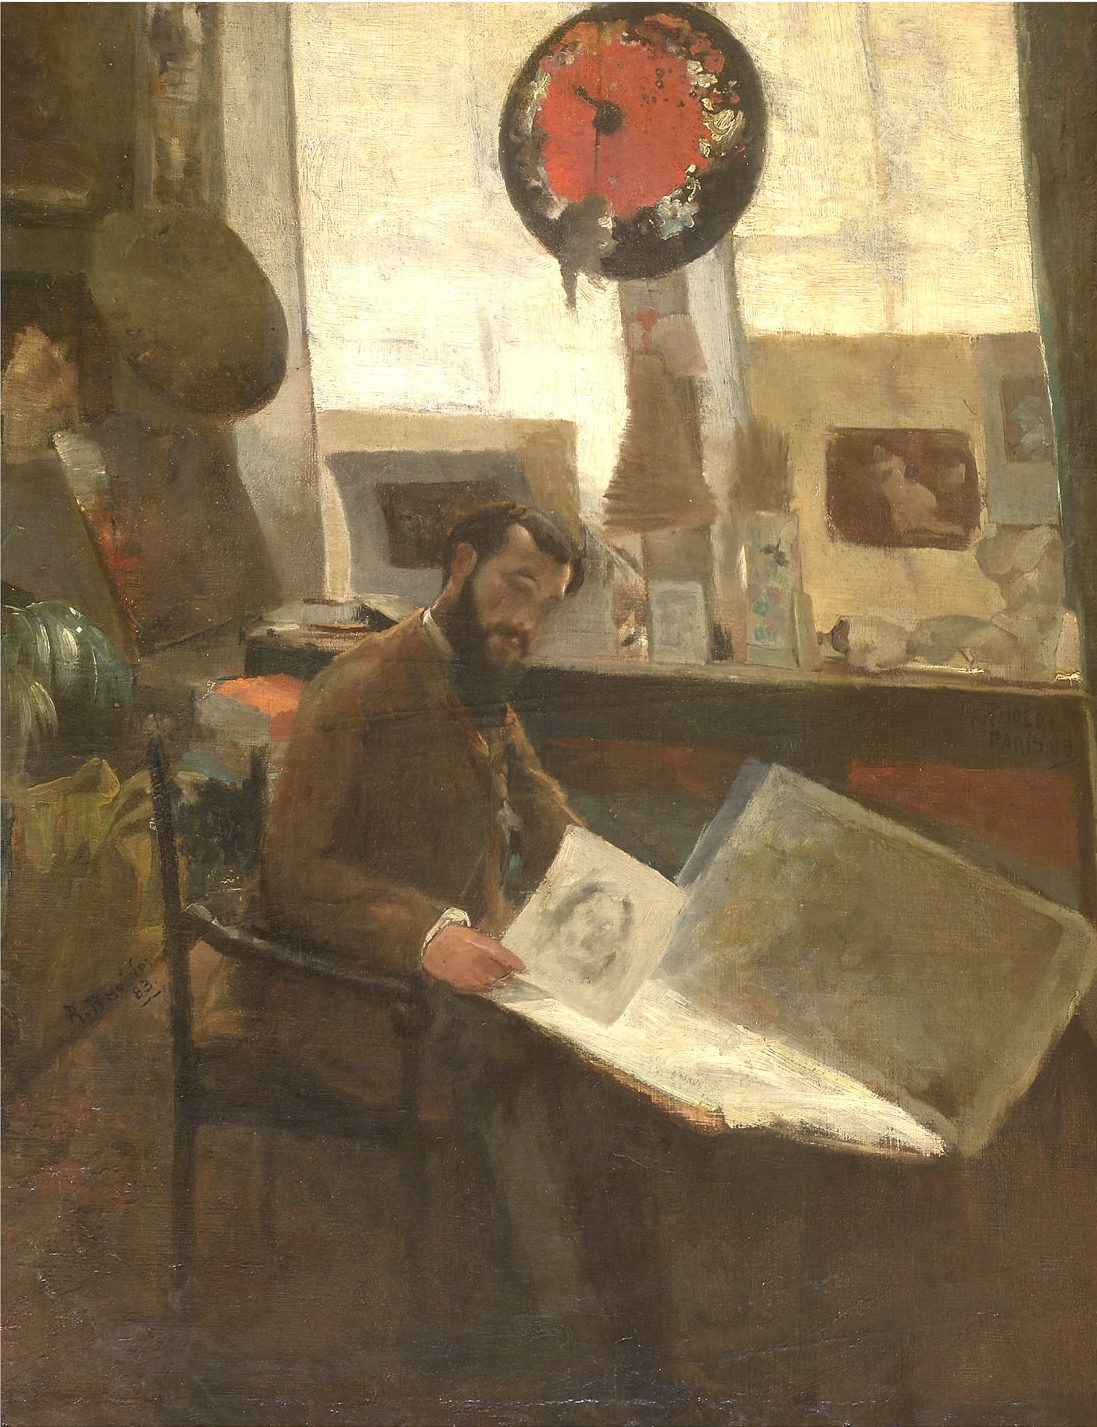 Trabalho de artista: imagem e autoimagem (1826-1929)